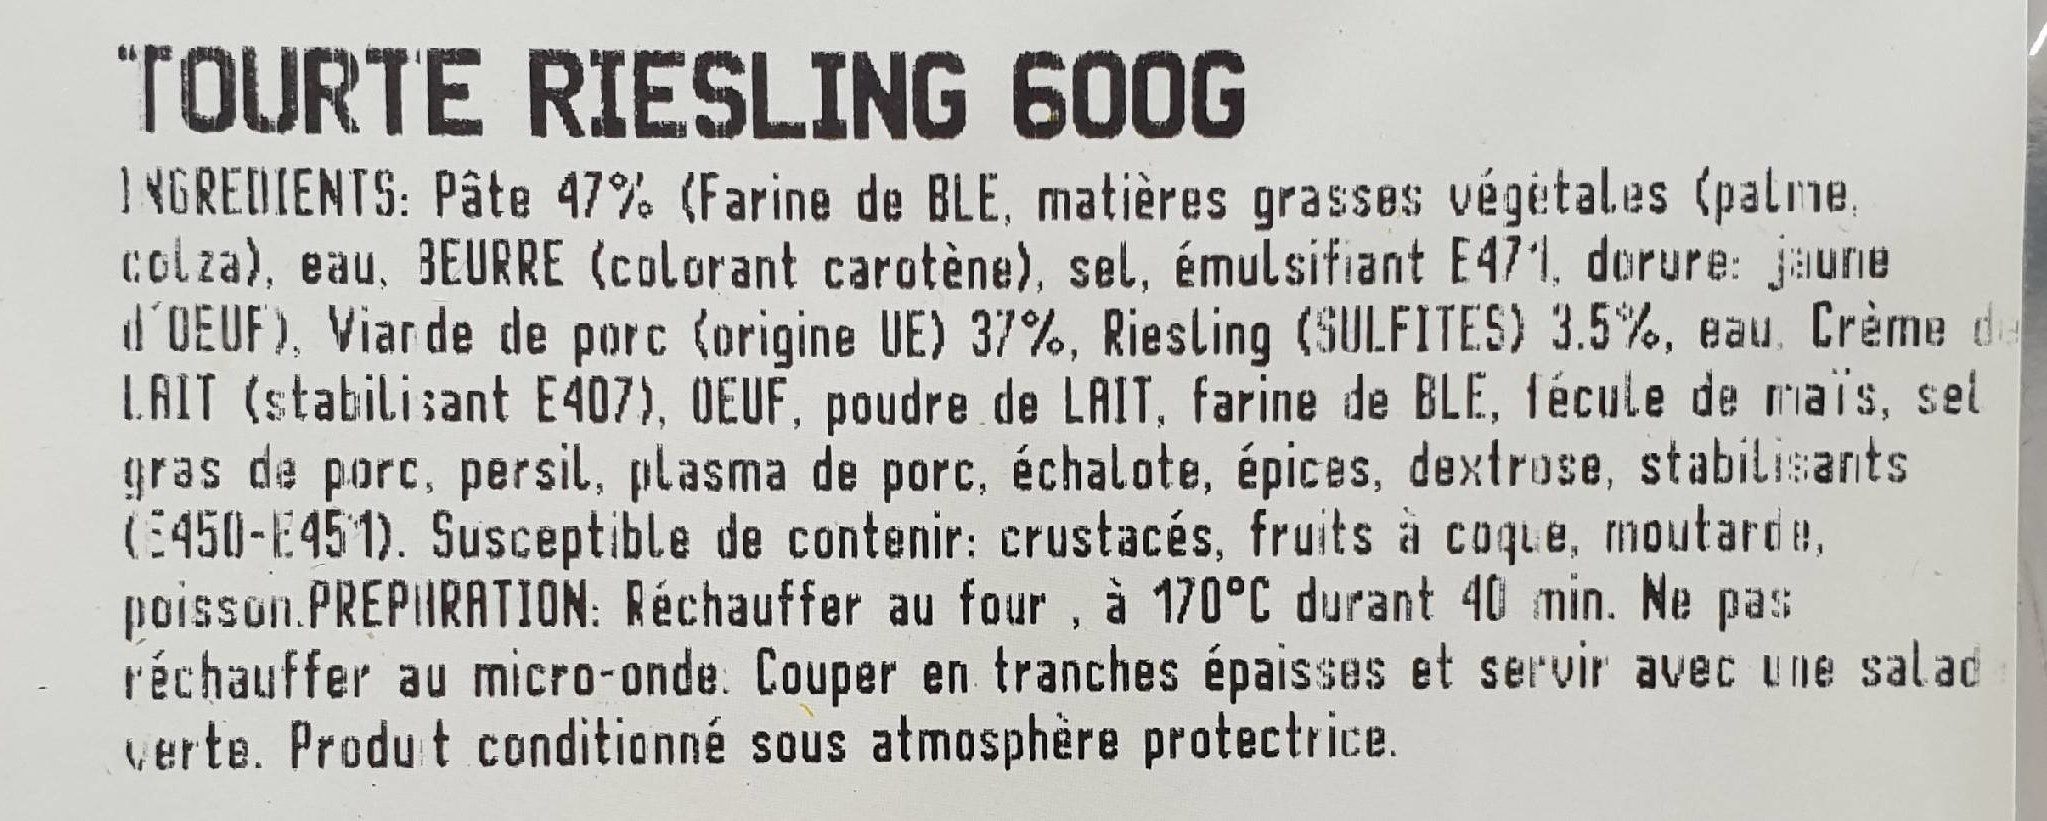 Tourte riesling - Ingredients - fr